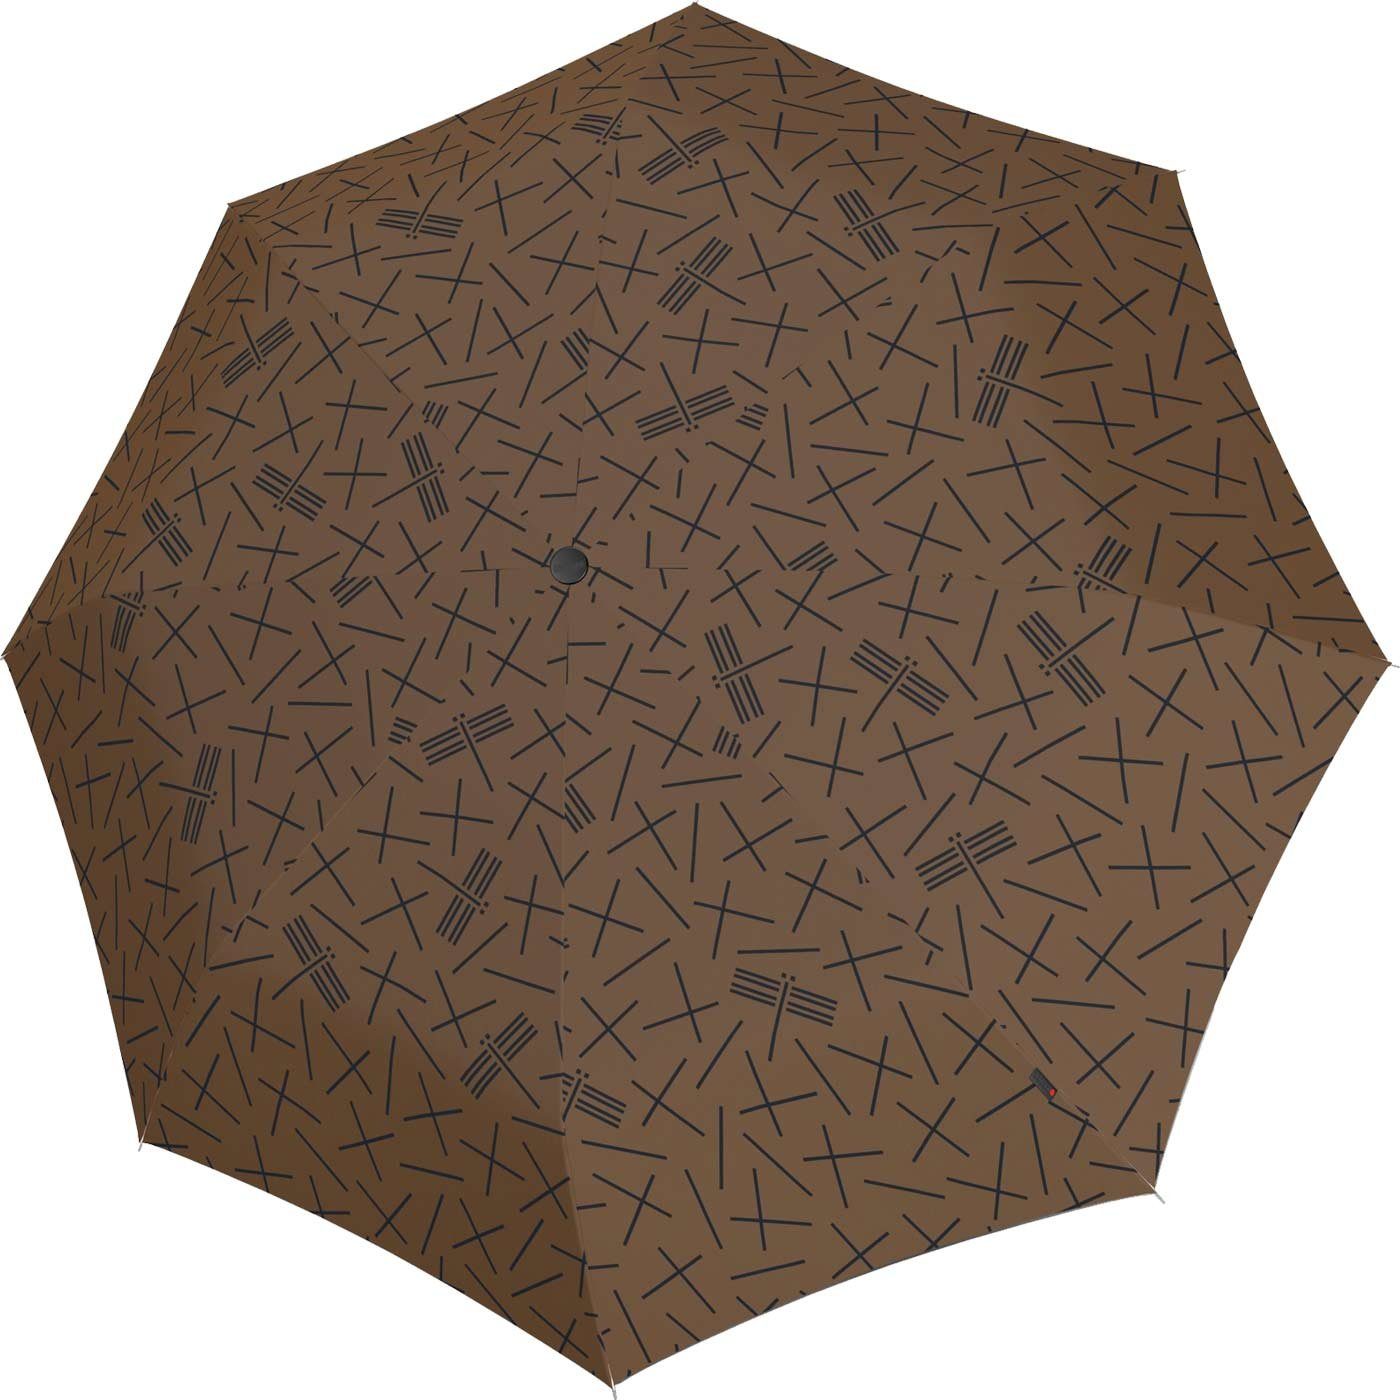 haltbar stabiler durch in den Taschenregenschirm mit Auf-Zu-Automatik, Knirps® Speichen leichter, Schirm braun Fiberglas besonders